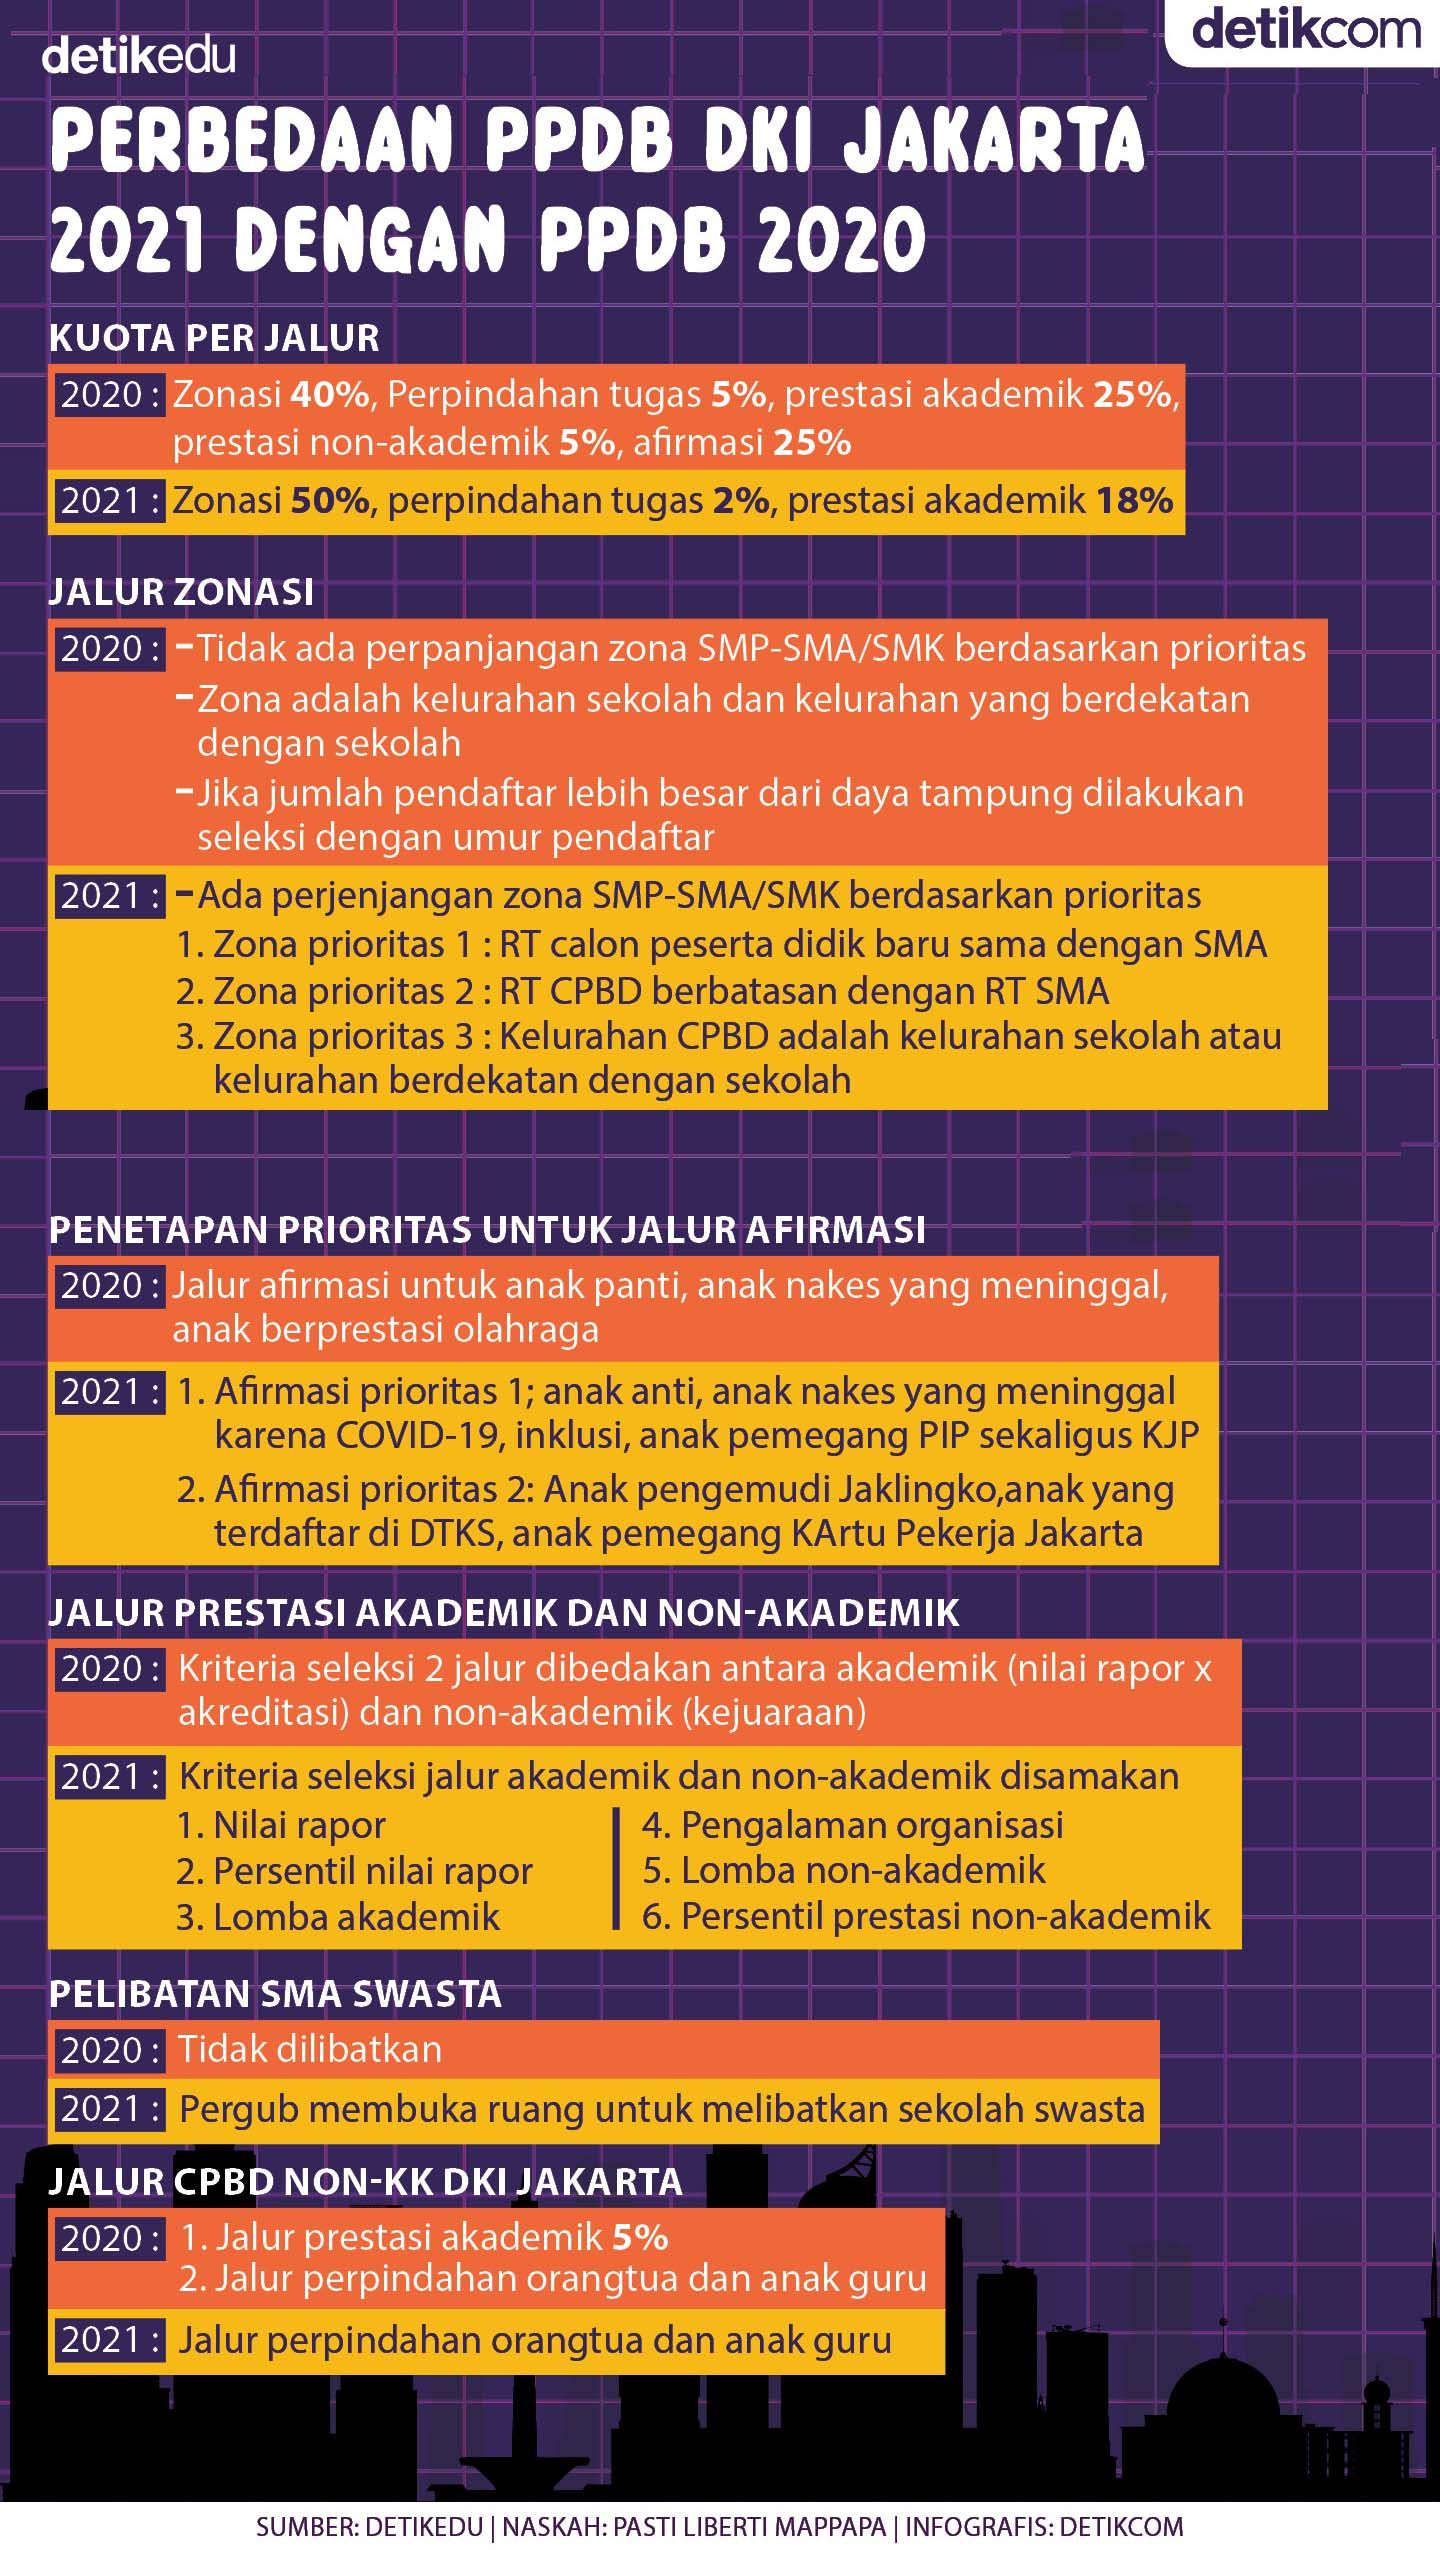 Perbedaan PPDB DKI Jakarta 2021 dengan 2020